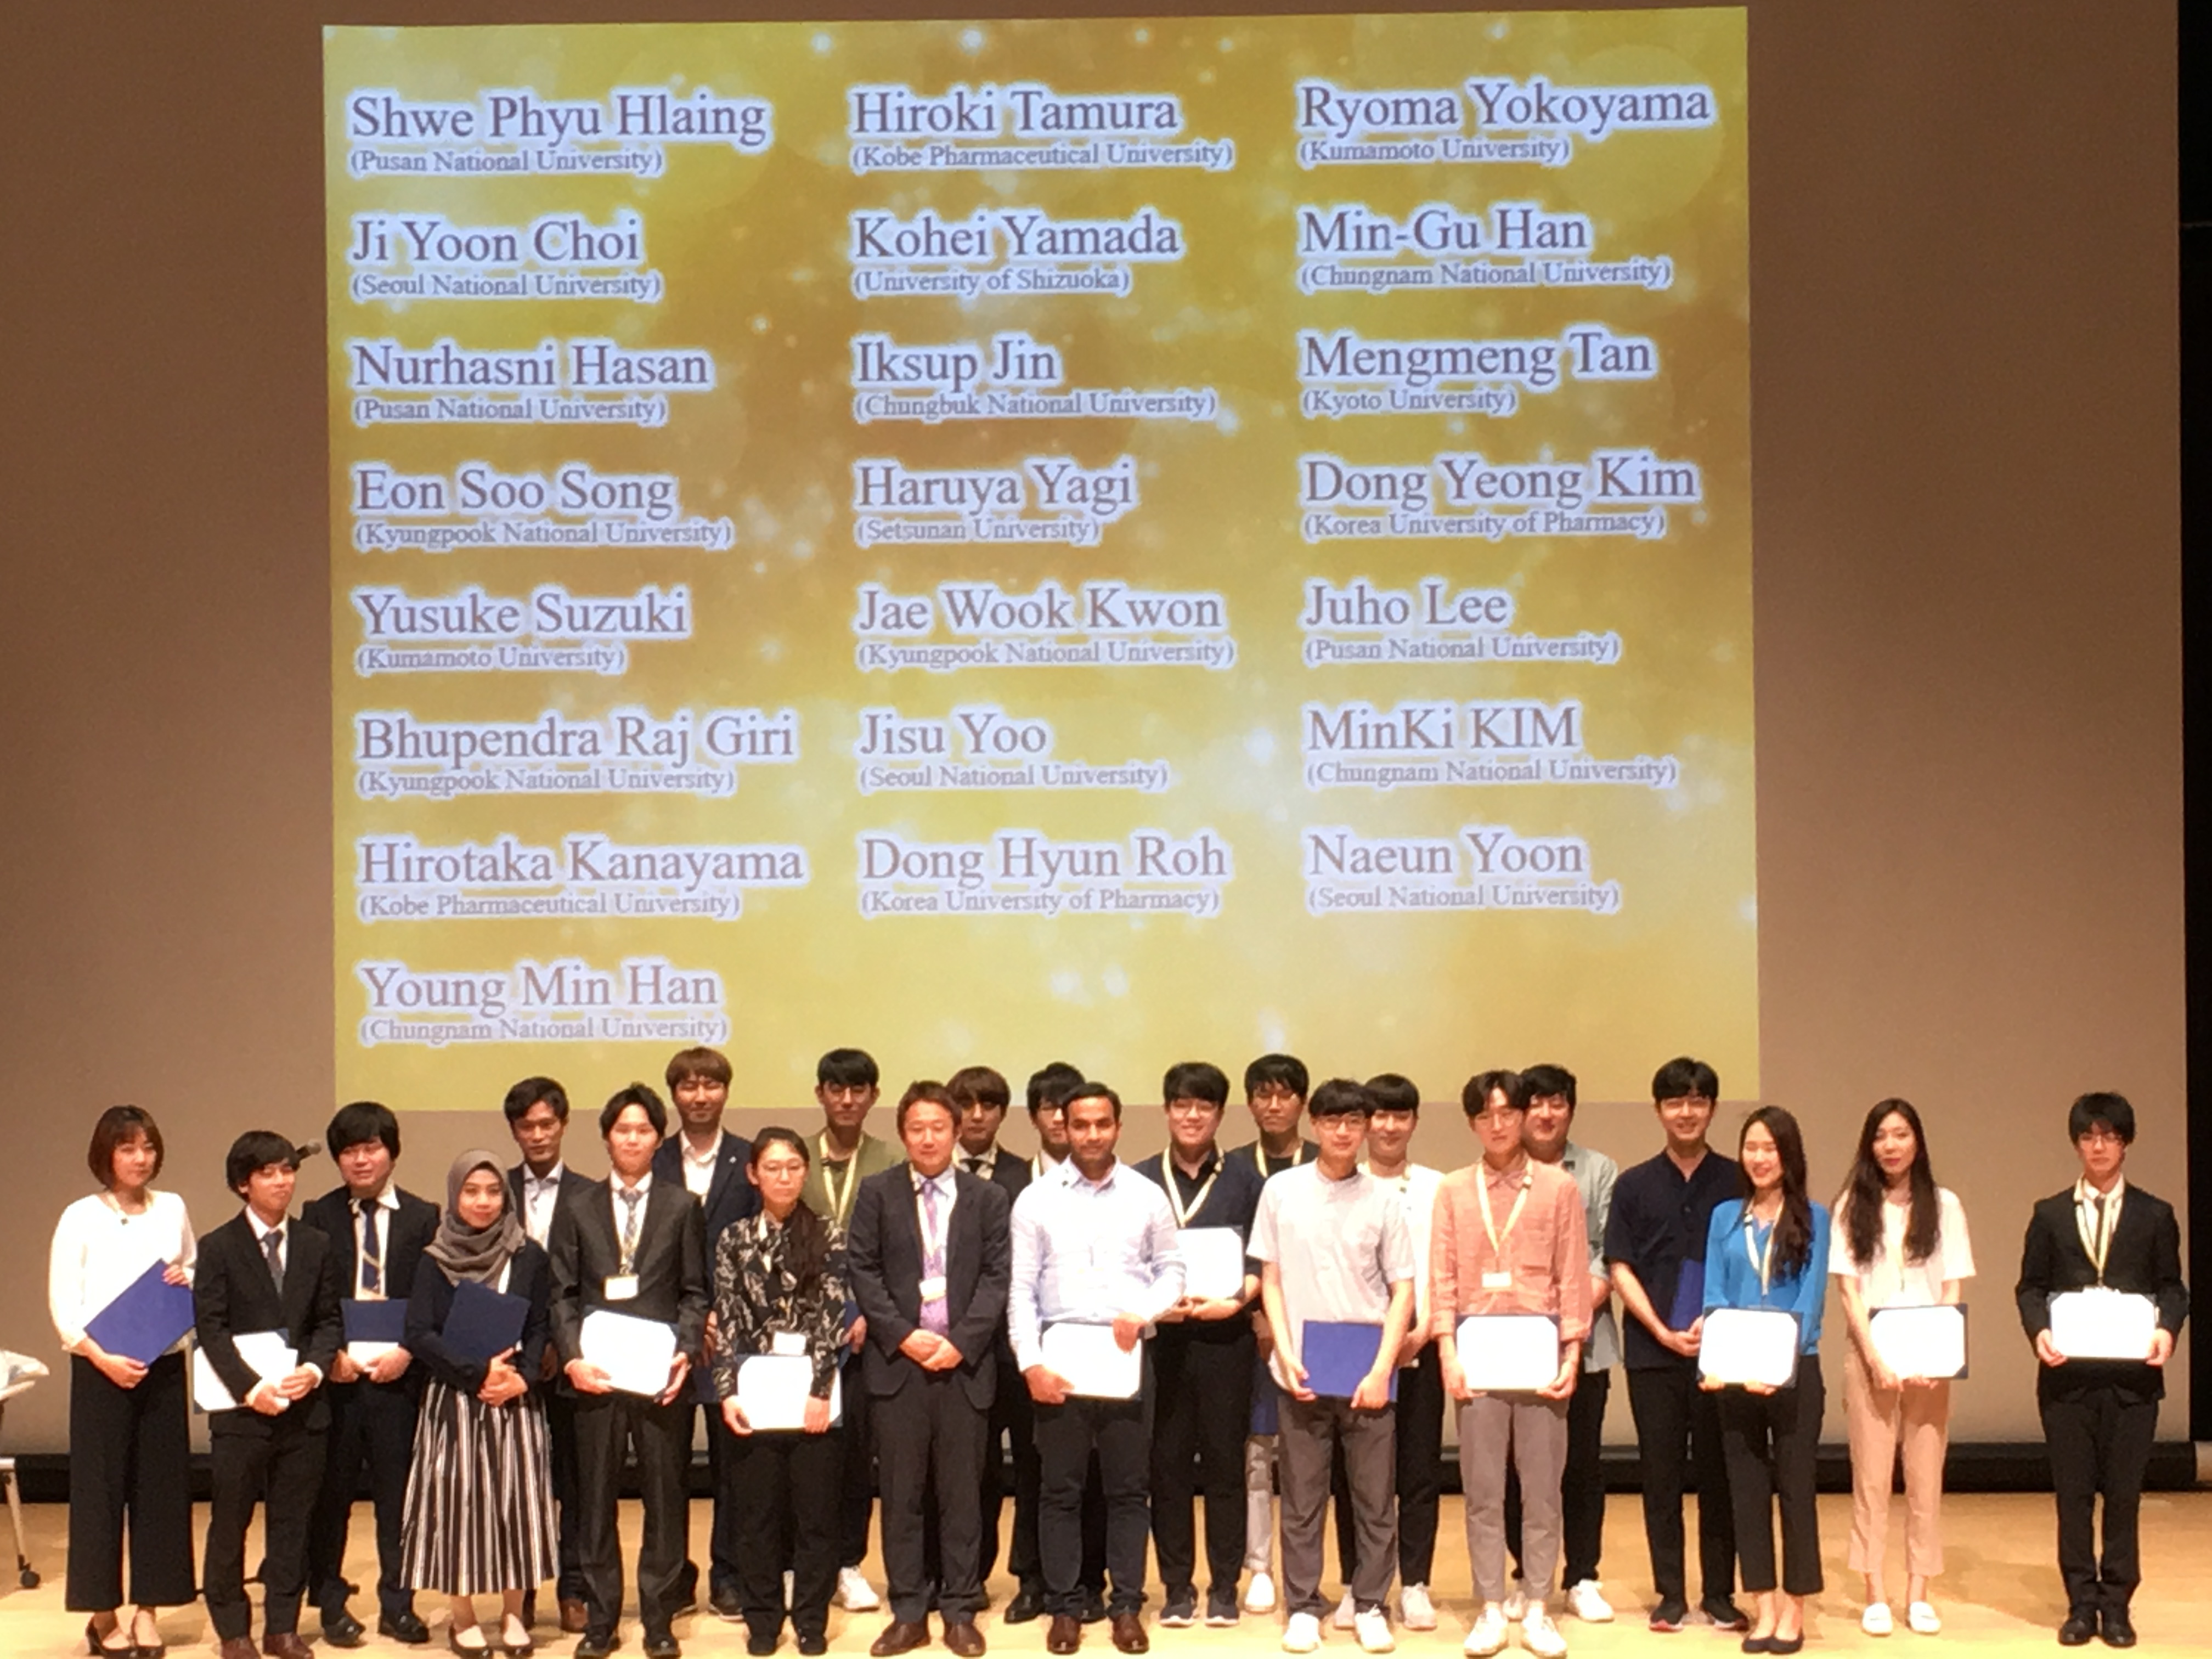 記事 第 3 回日韓若手薬剤学研究者ワークショップで 田村大樹くん、金山裕孝くんが Travelship Award を受賞しました。のアイキャッチ画像